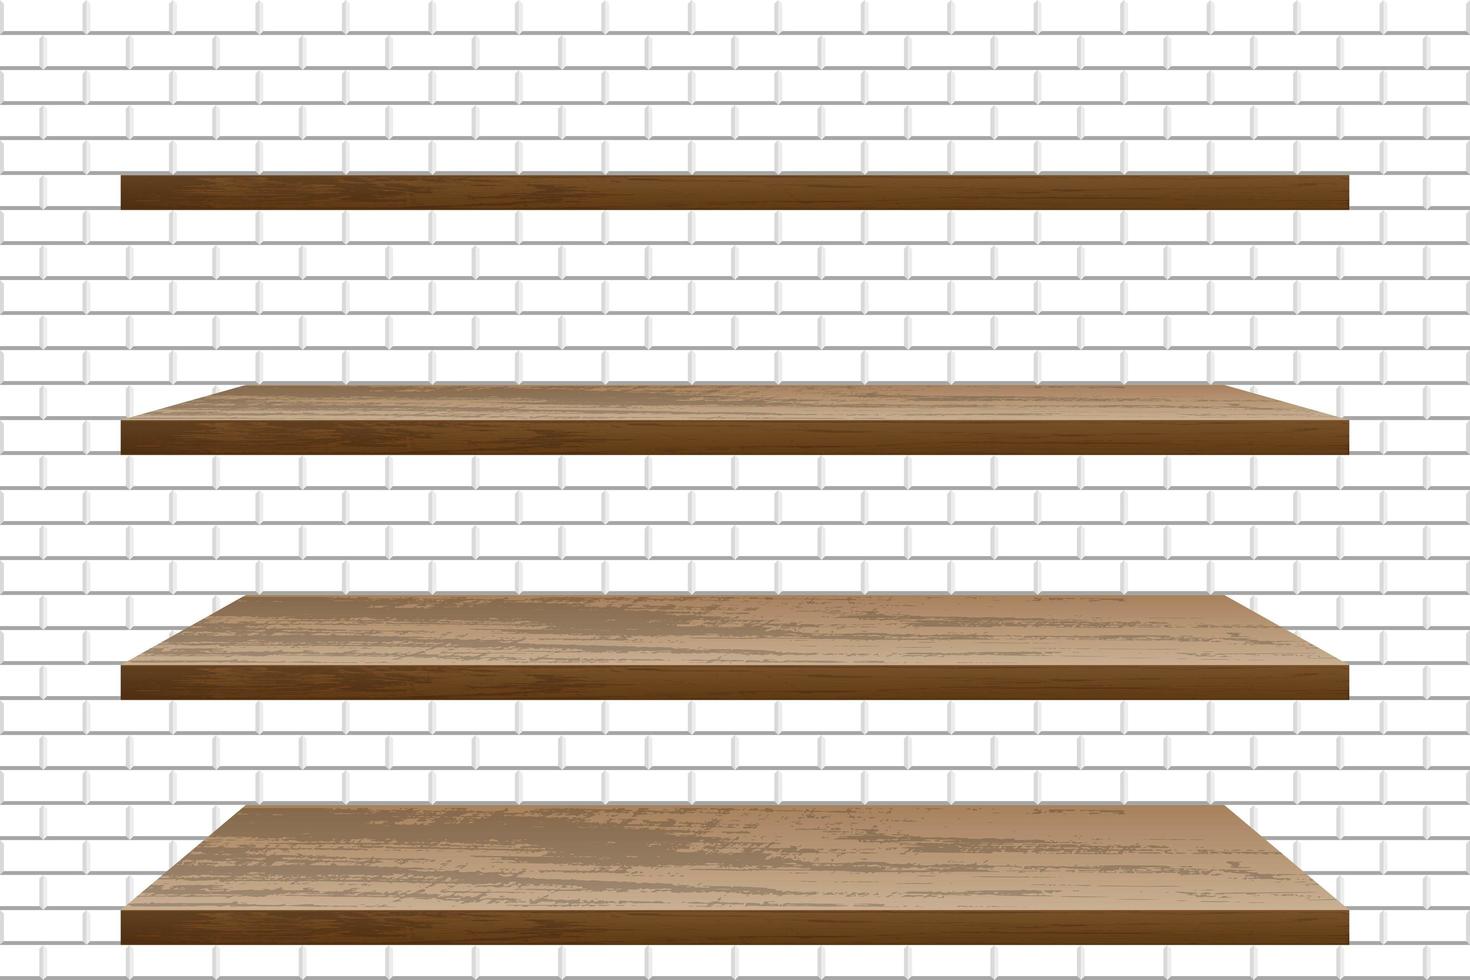 realistische lege houten planken op witte bakstenen muur vector